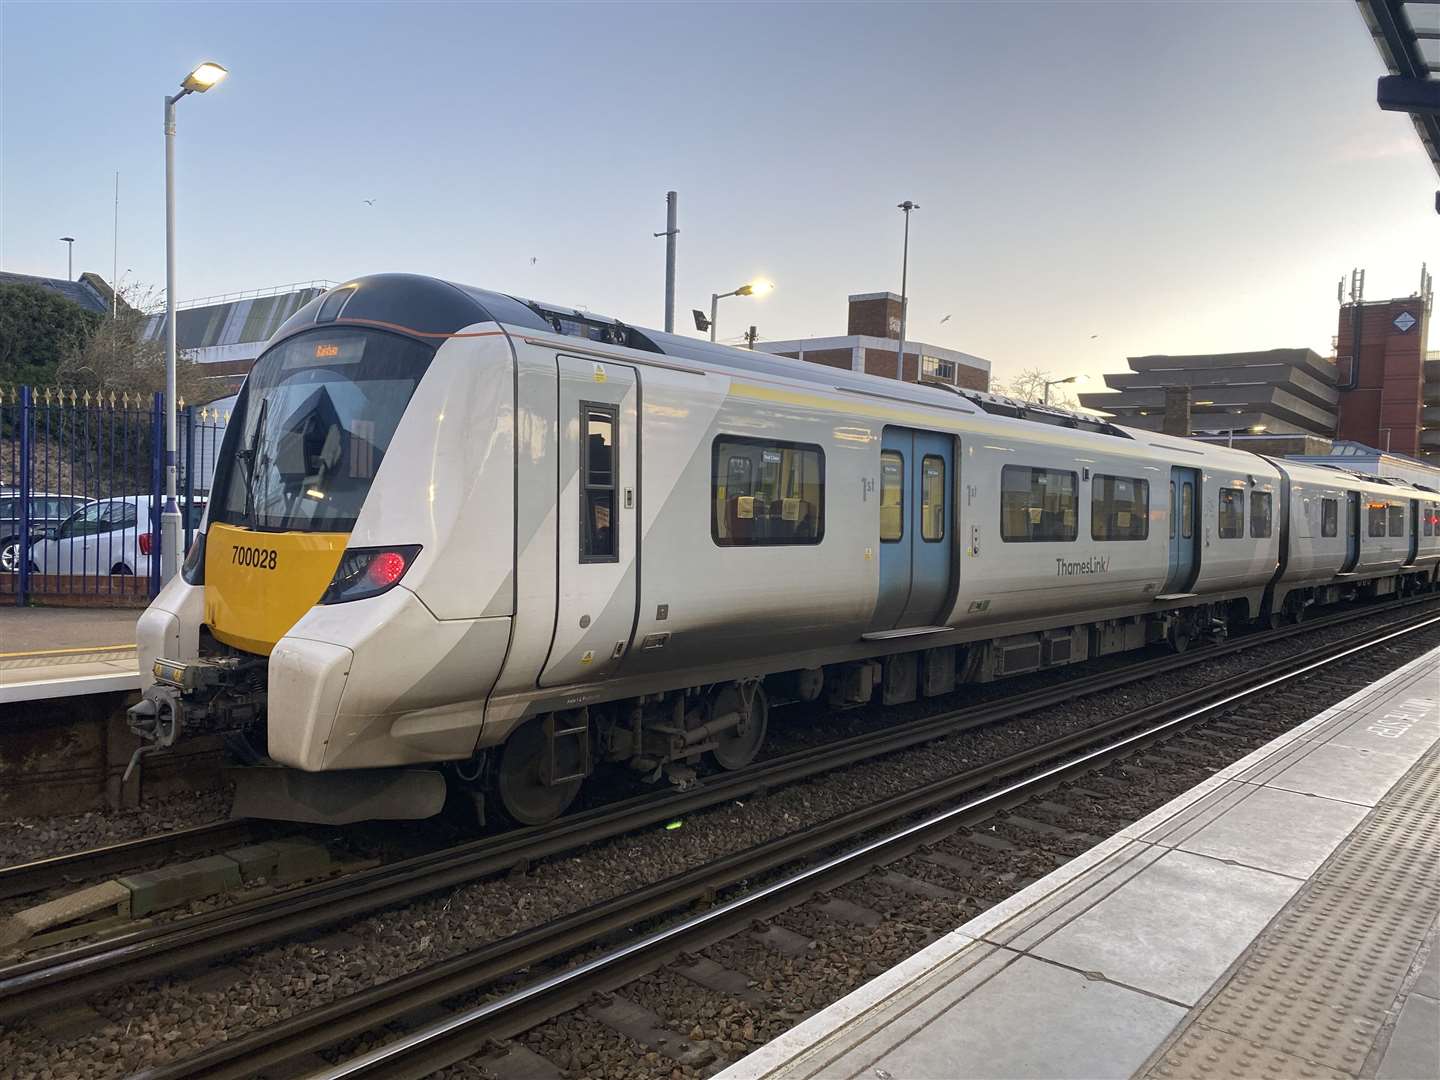 Thameslink services were delayed